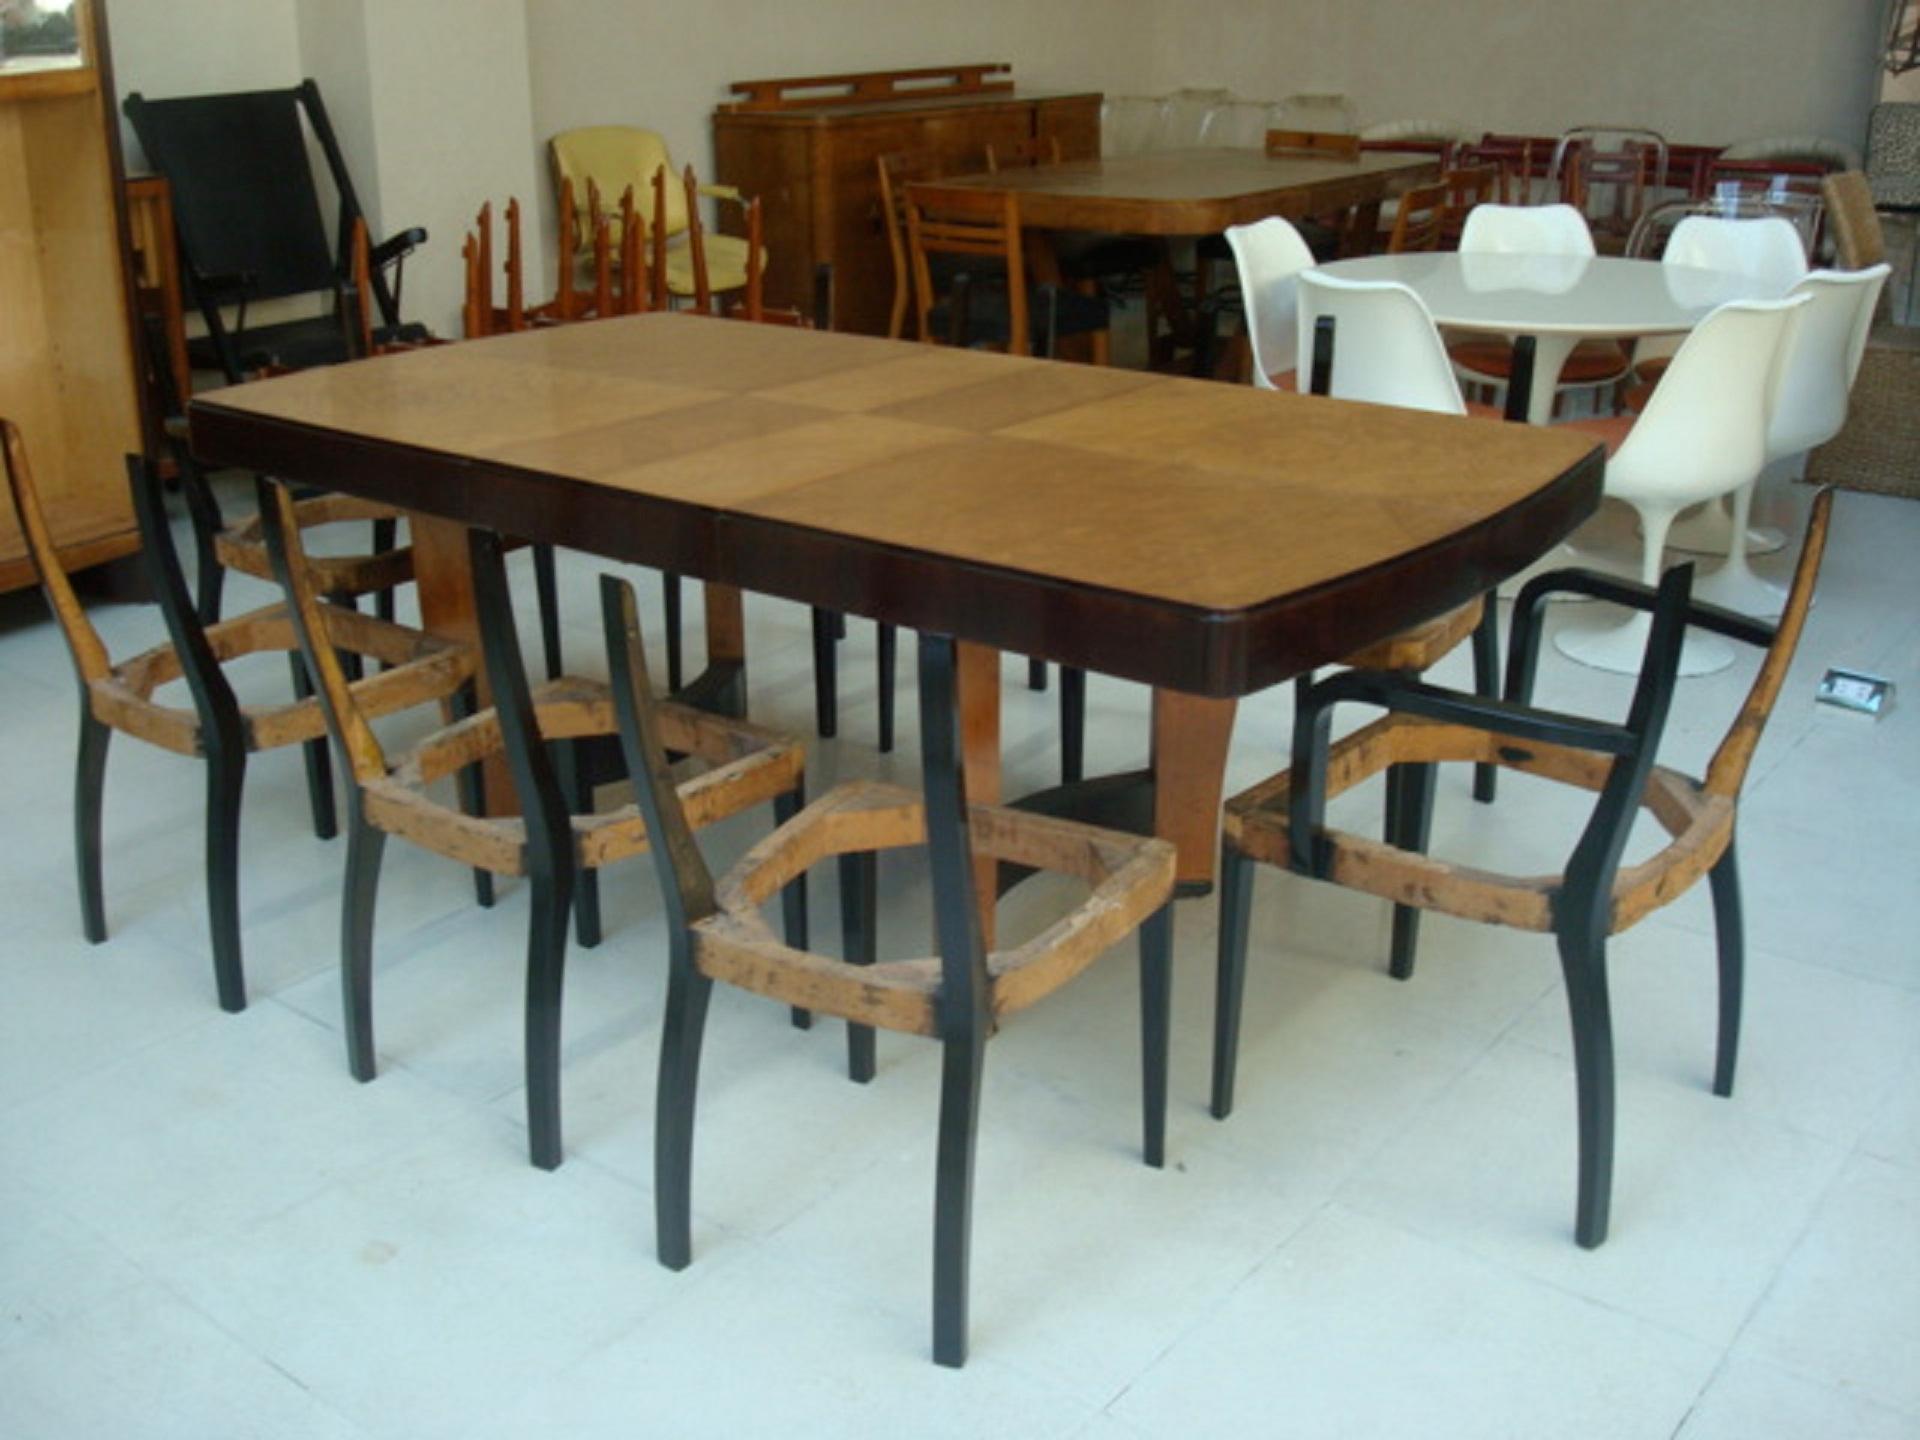 Table de salle à manger Art Déco
Année : 1930
Pays : Allemand
Bois et cuir
Il s'agit d'une table de salle à manger élégante et sophistiquée.
Vous voulez vivre des années dorées, c'est la table de salle à manger qu'il vous faut pour votre